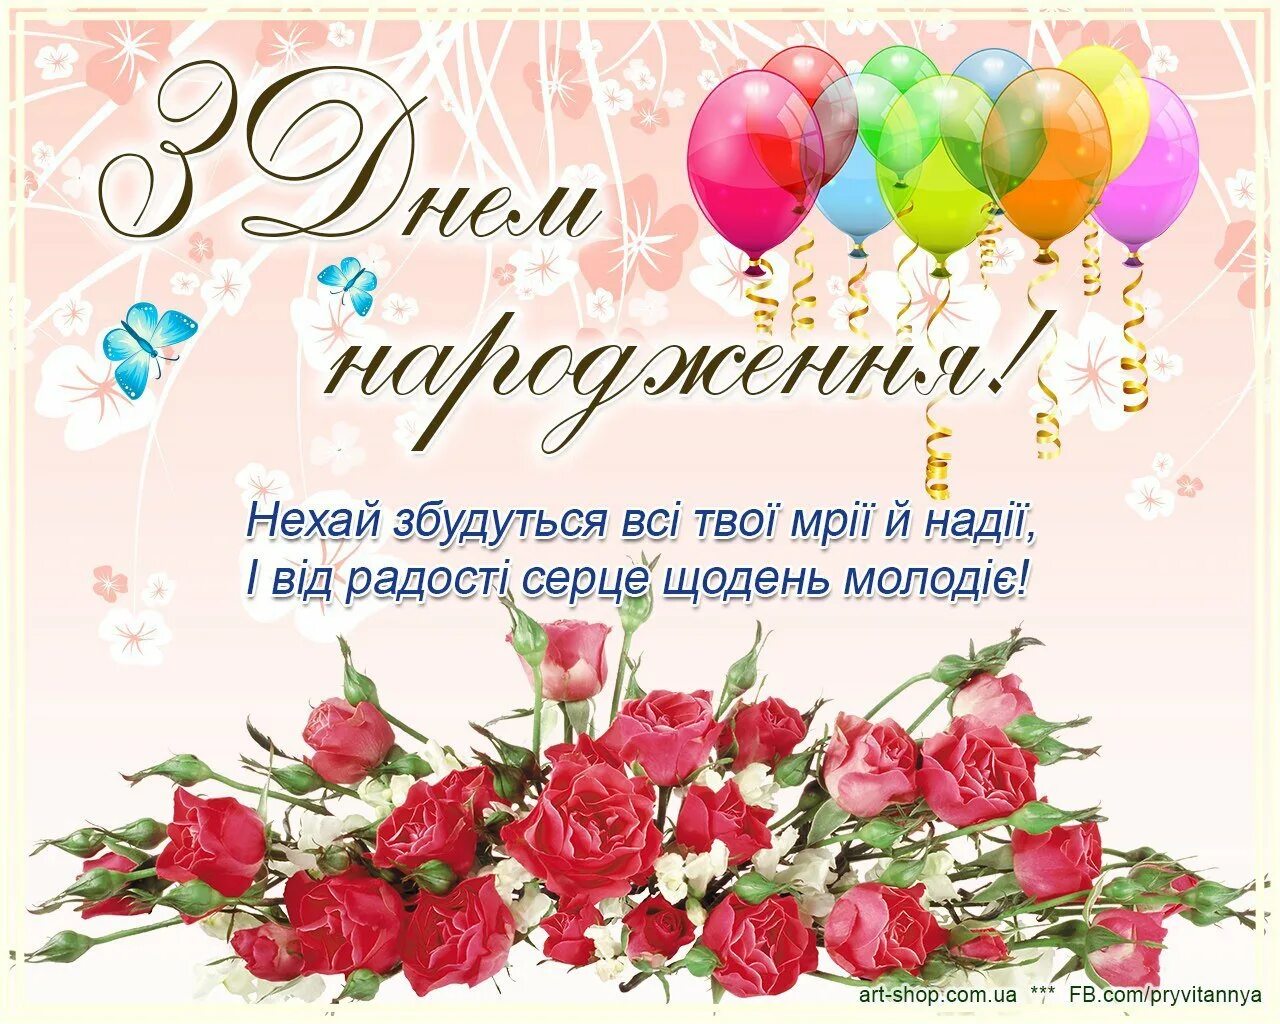 Поздравление сестре на украинском. Поздравления с днём рождения на украинском языке. Поздравления с днём рождения на украинском языке открытки. Поздравления с днём рождения женщине на украинском языке. Поздравленя с днём рождения на украинском языке.